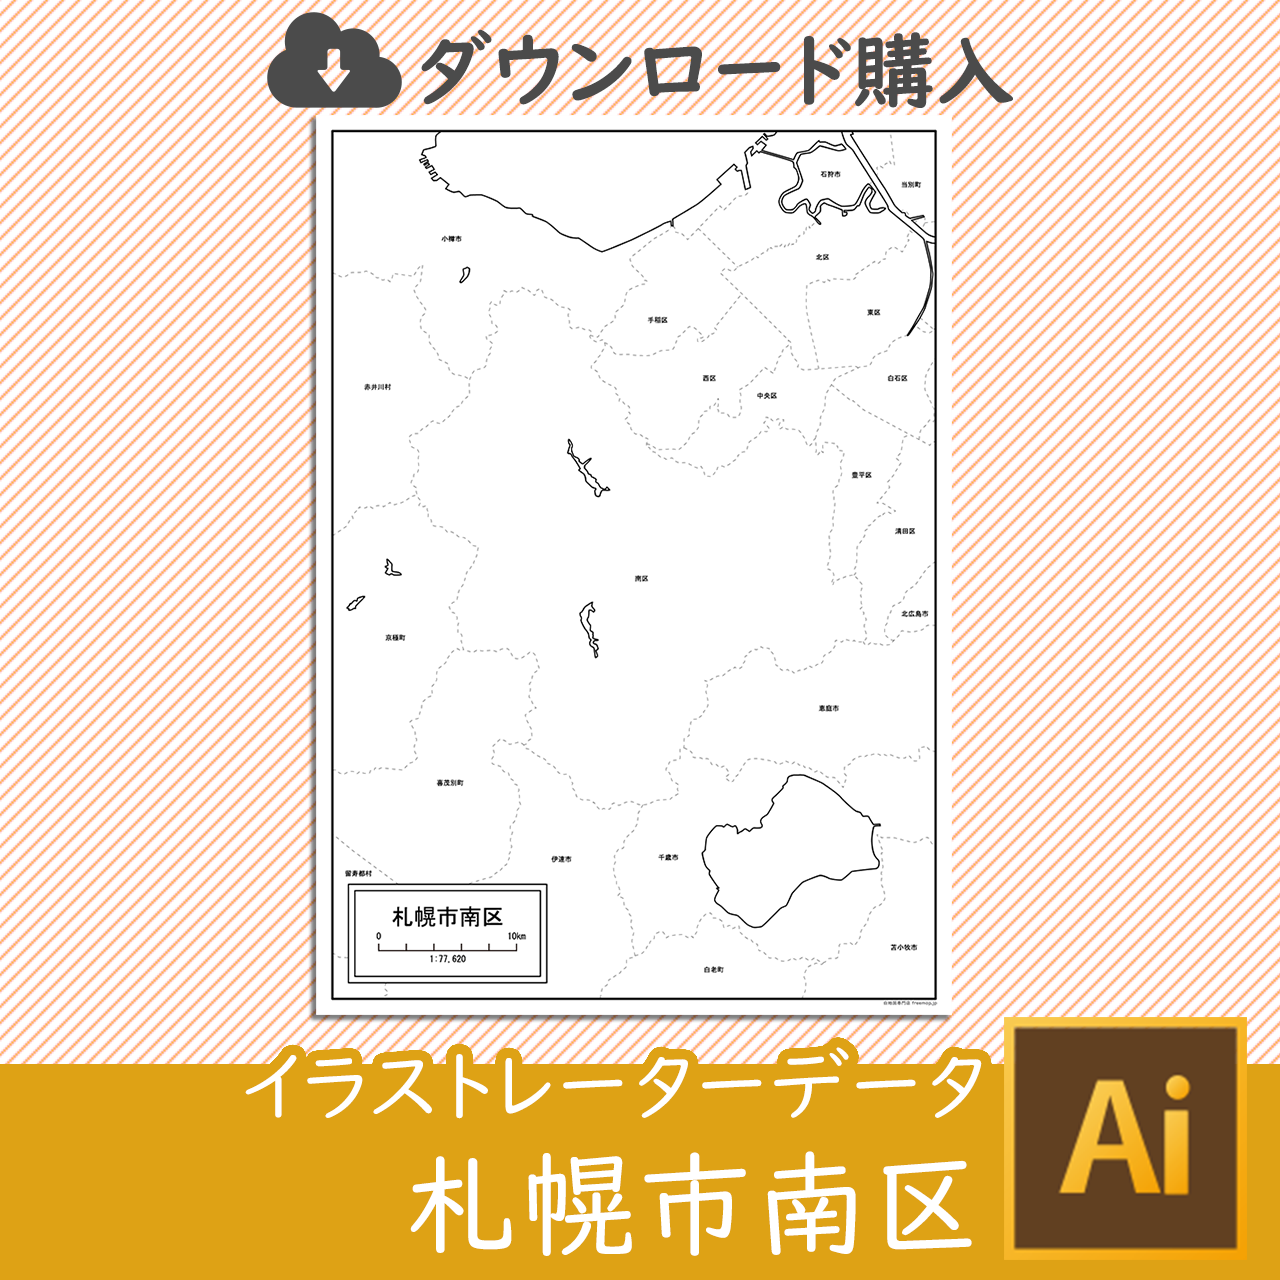 札幌市南区のaiデータのサムネイル画像